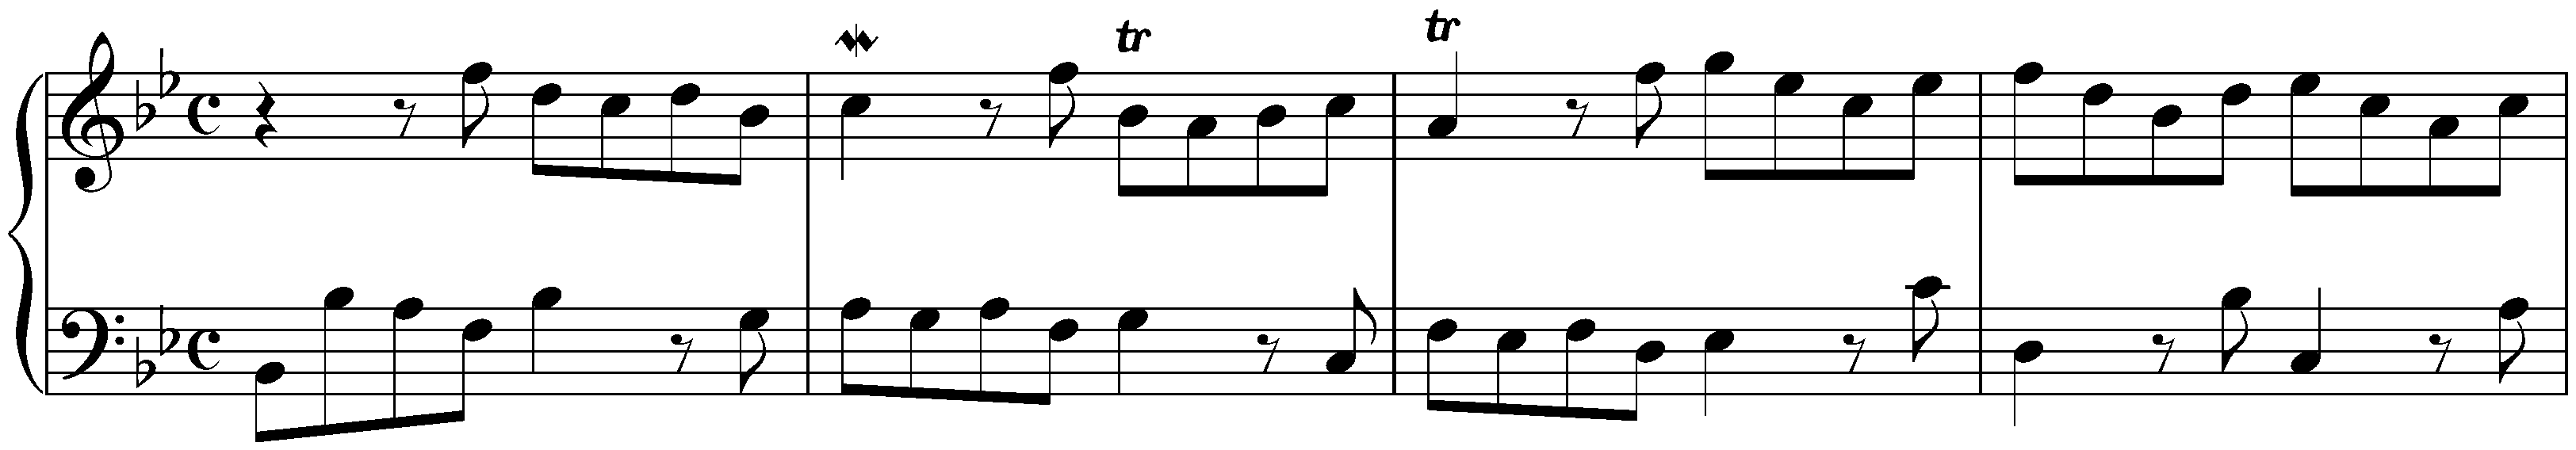 Sonatina in B-flat major, HWV 585